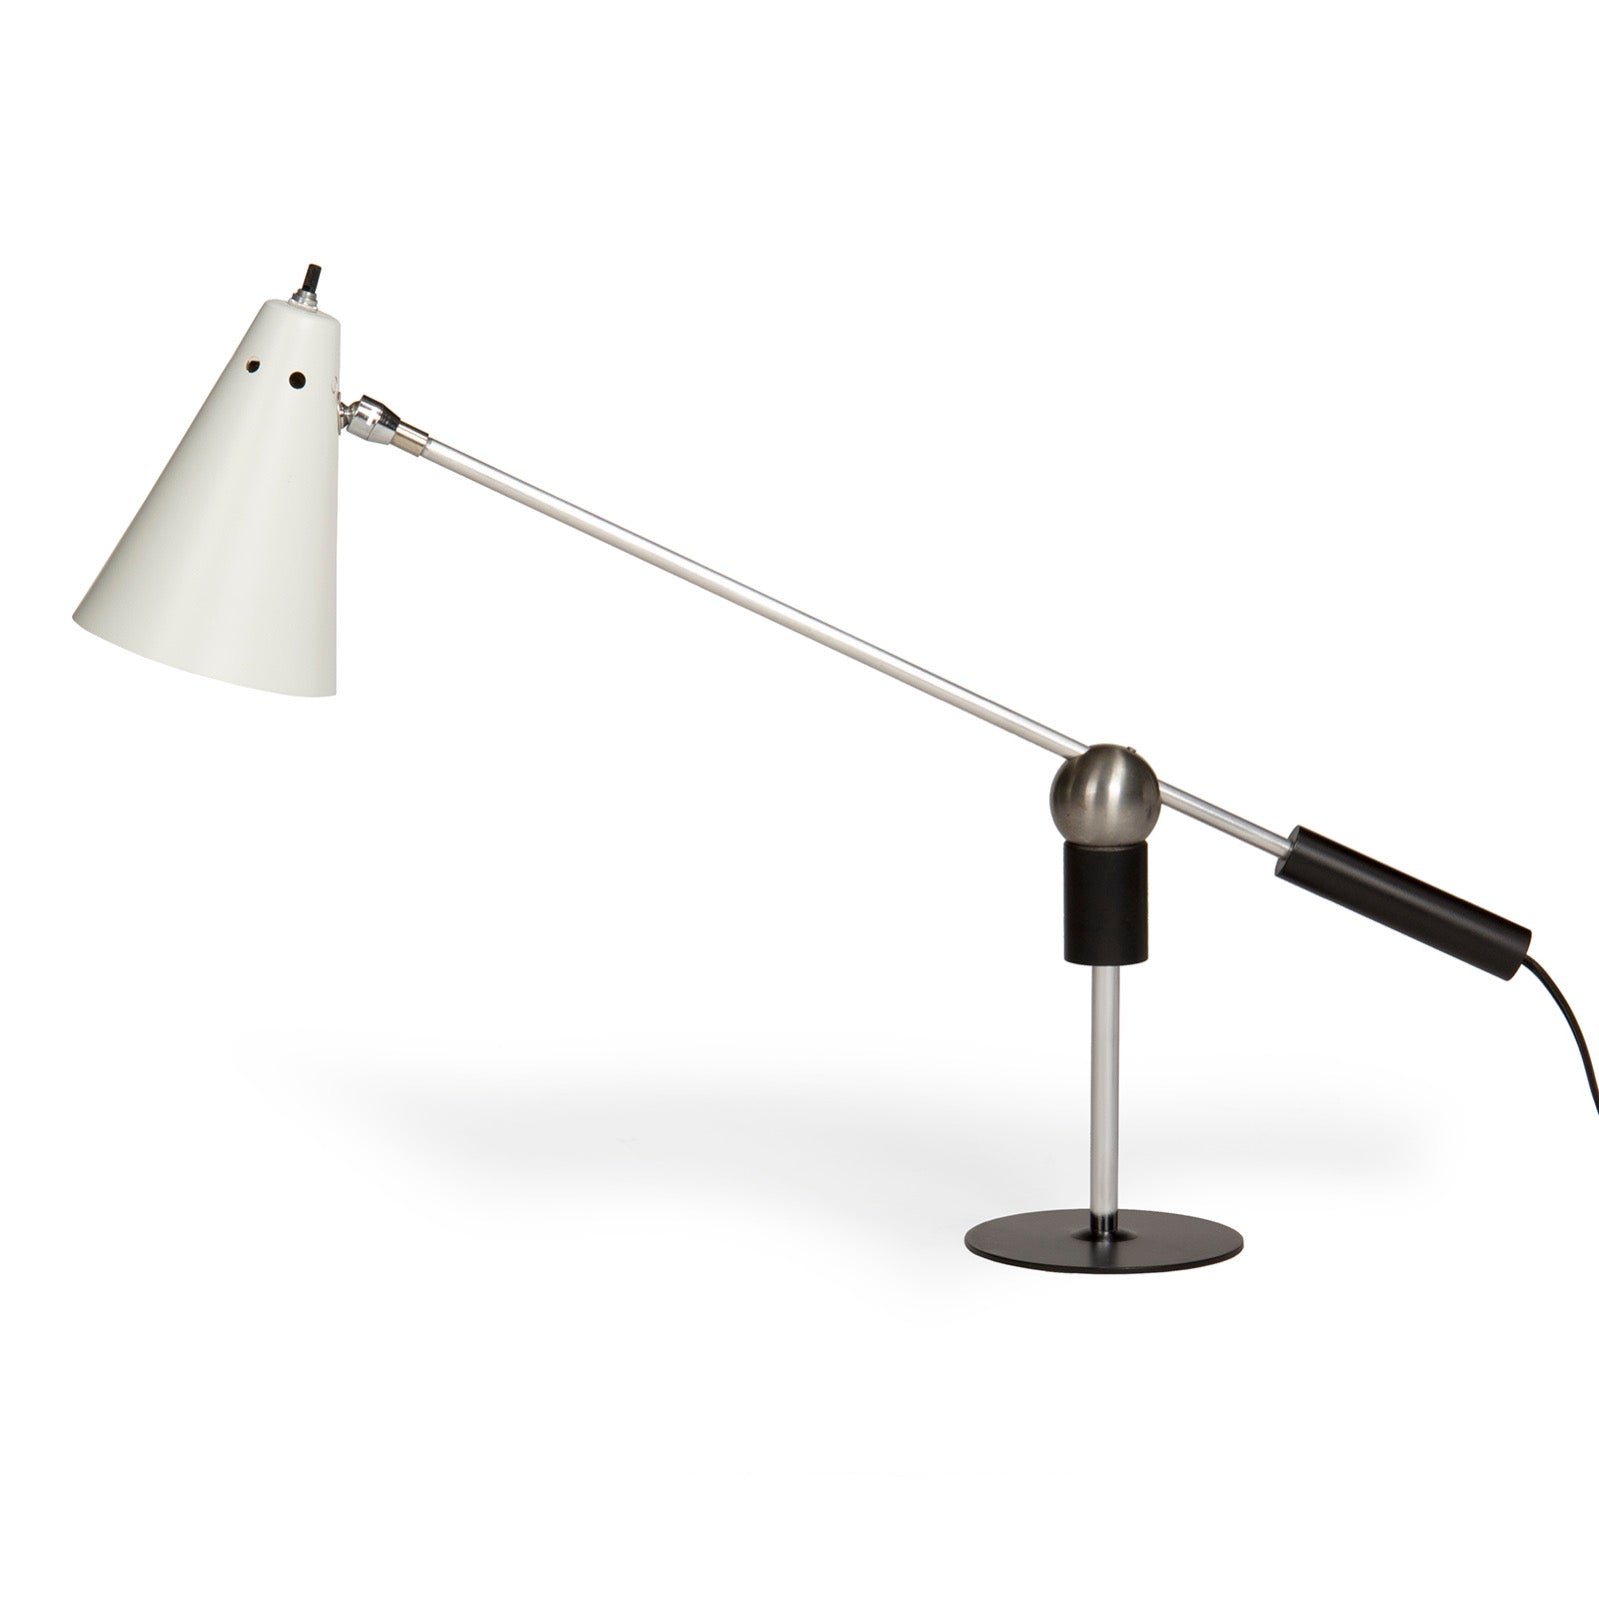 Desk Lamp by Gilbert Watrous for Heifetz Lighting Co.